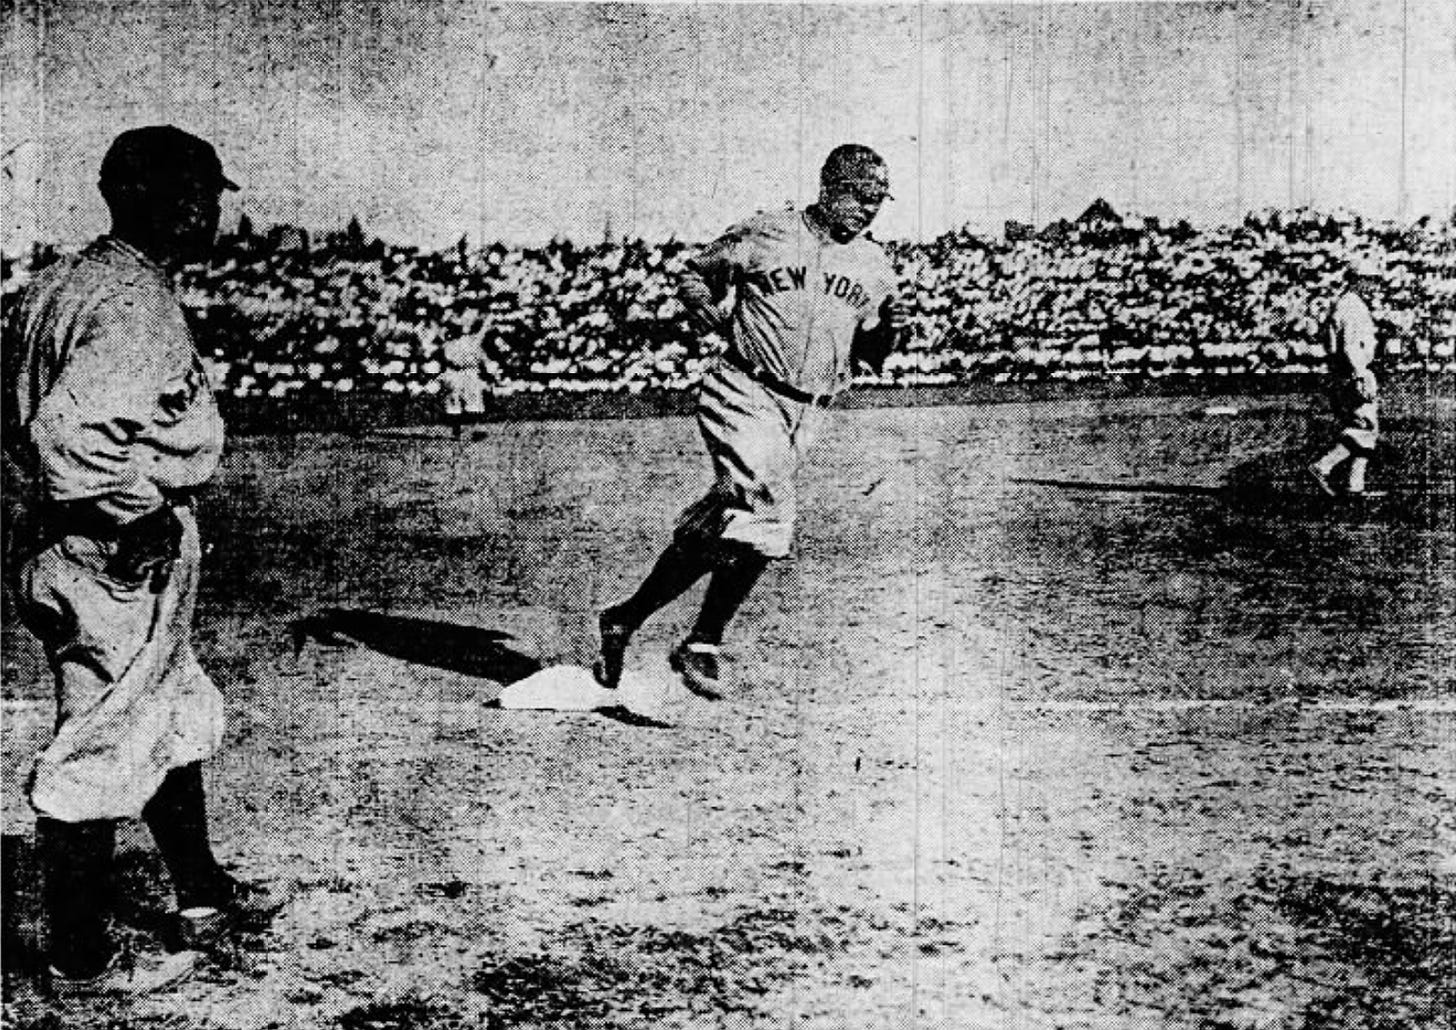 1922 Babe Ruth Home Run